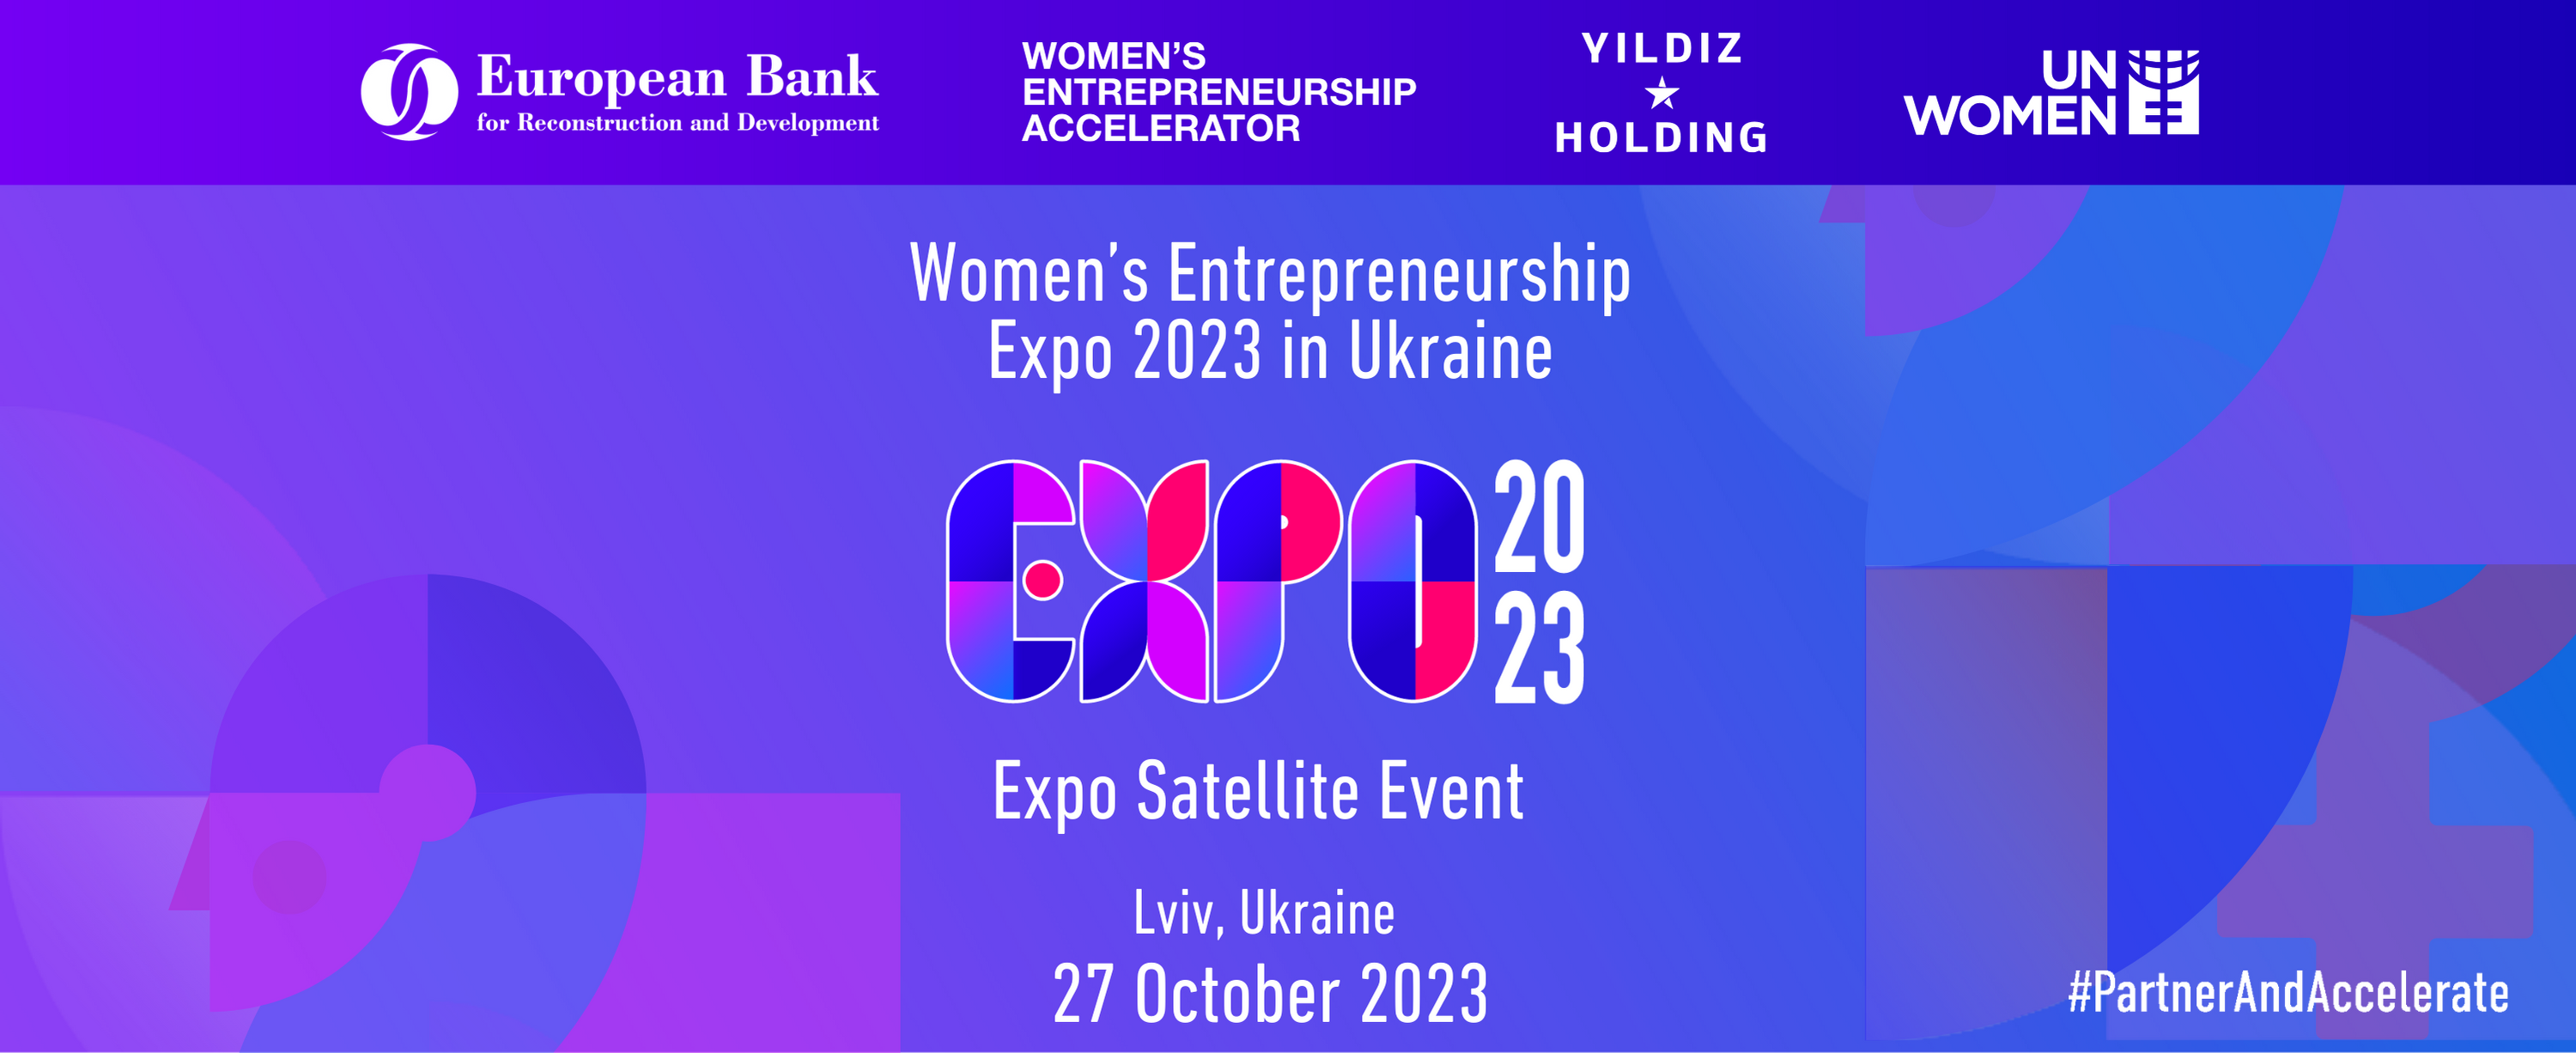 Women’s Entrepreneurship Expo 2023 in Ukraine 